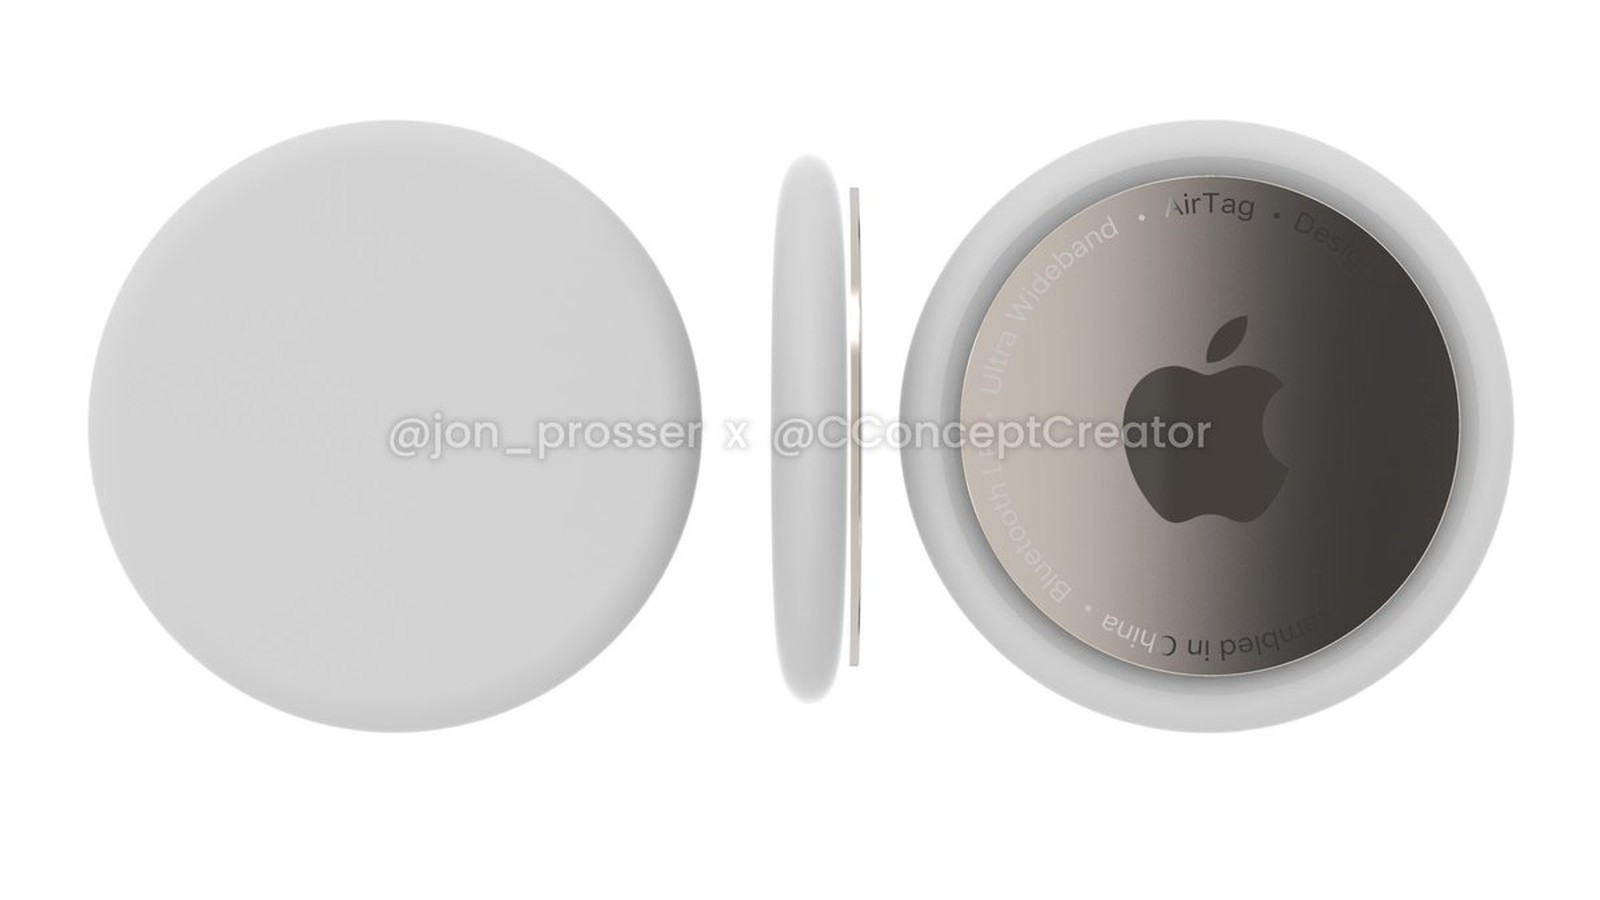 蘋果AirTag渲染圖曝光,采用純白外觀設計